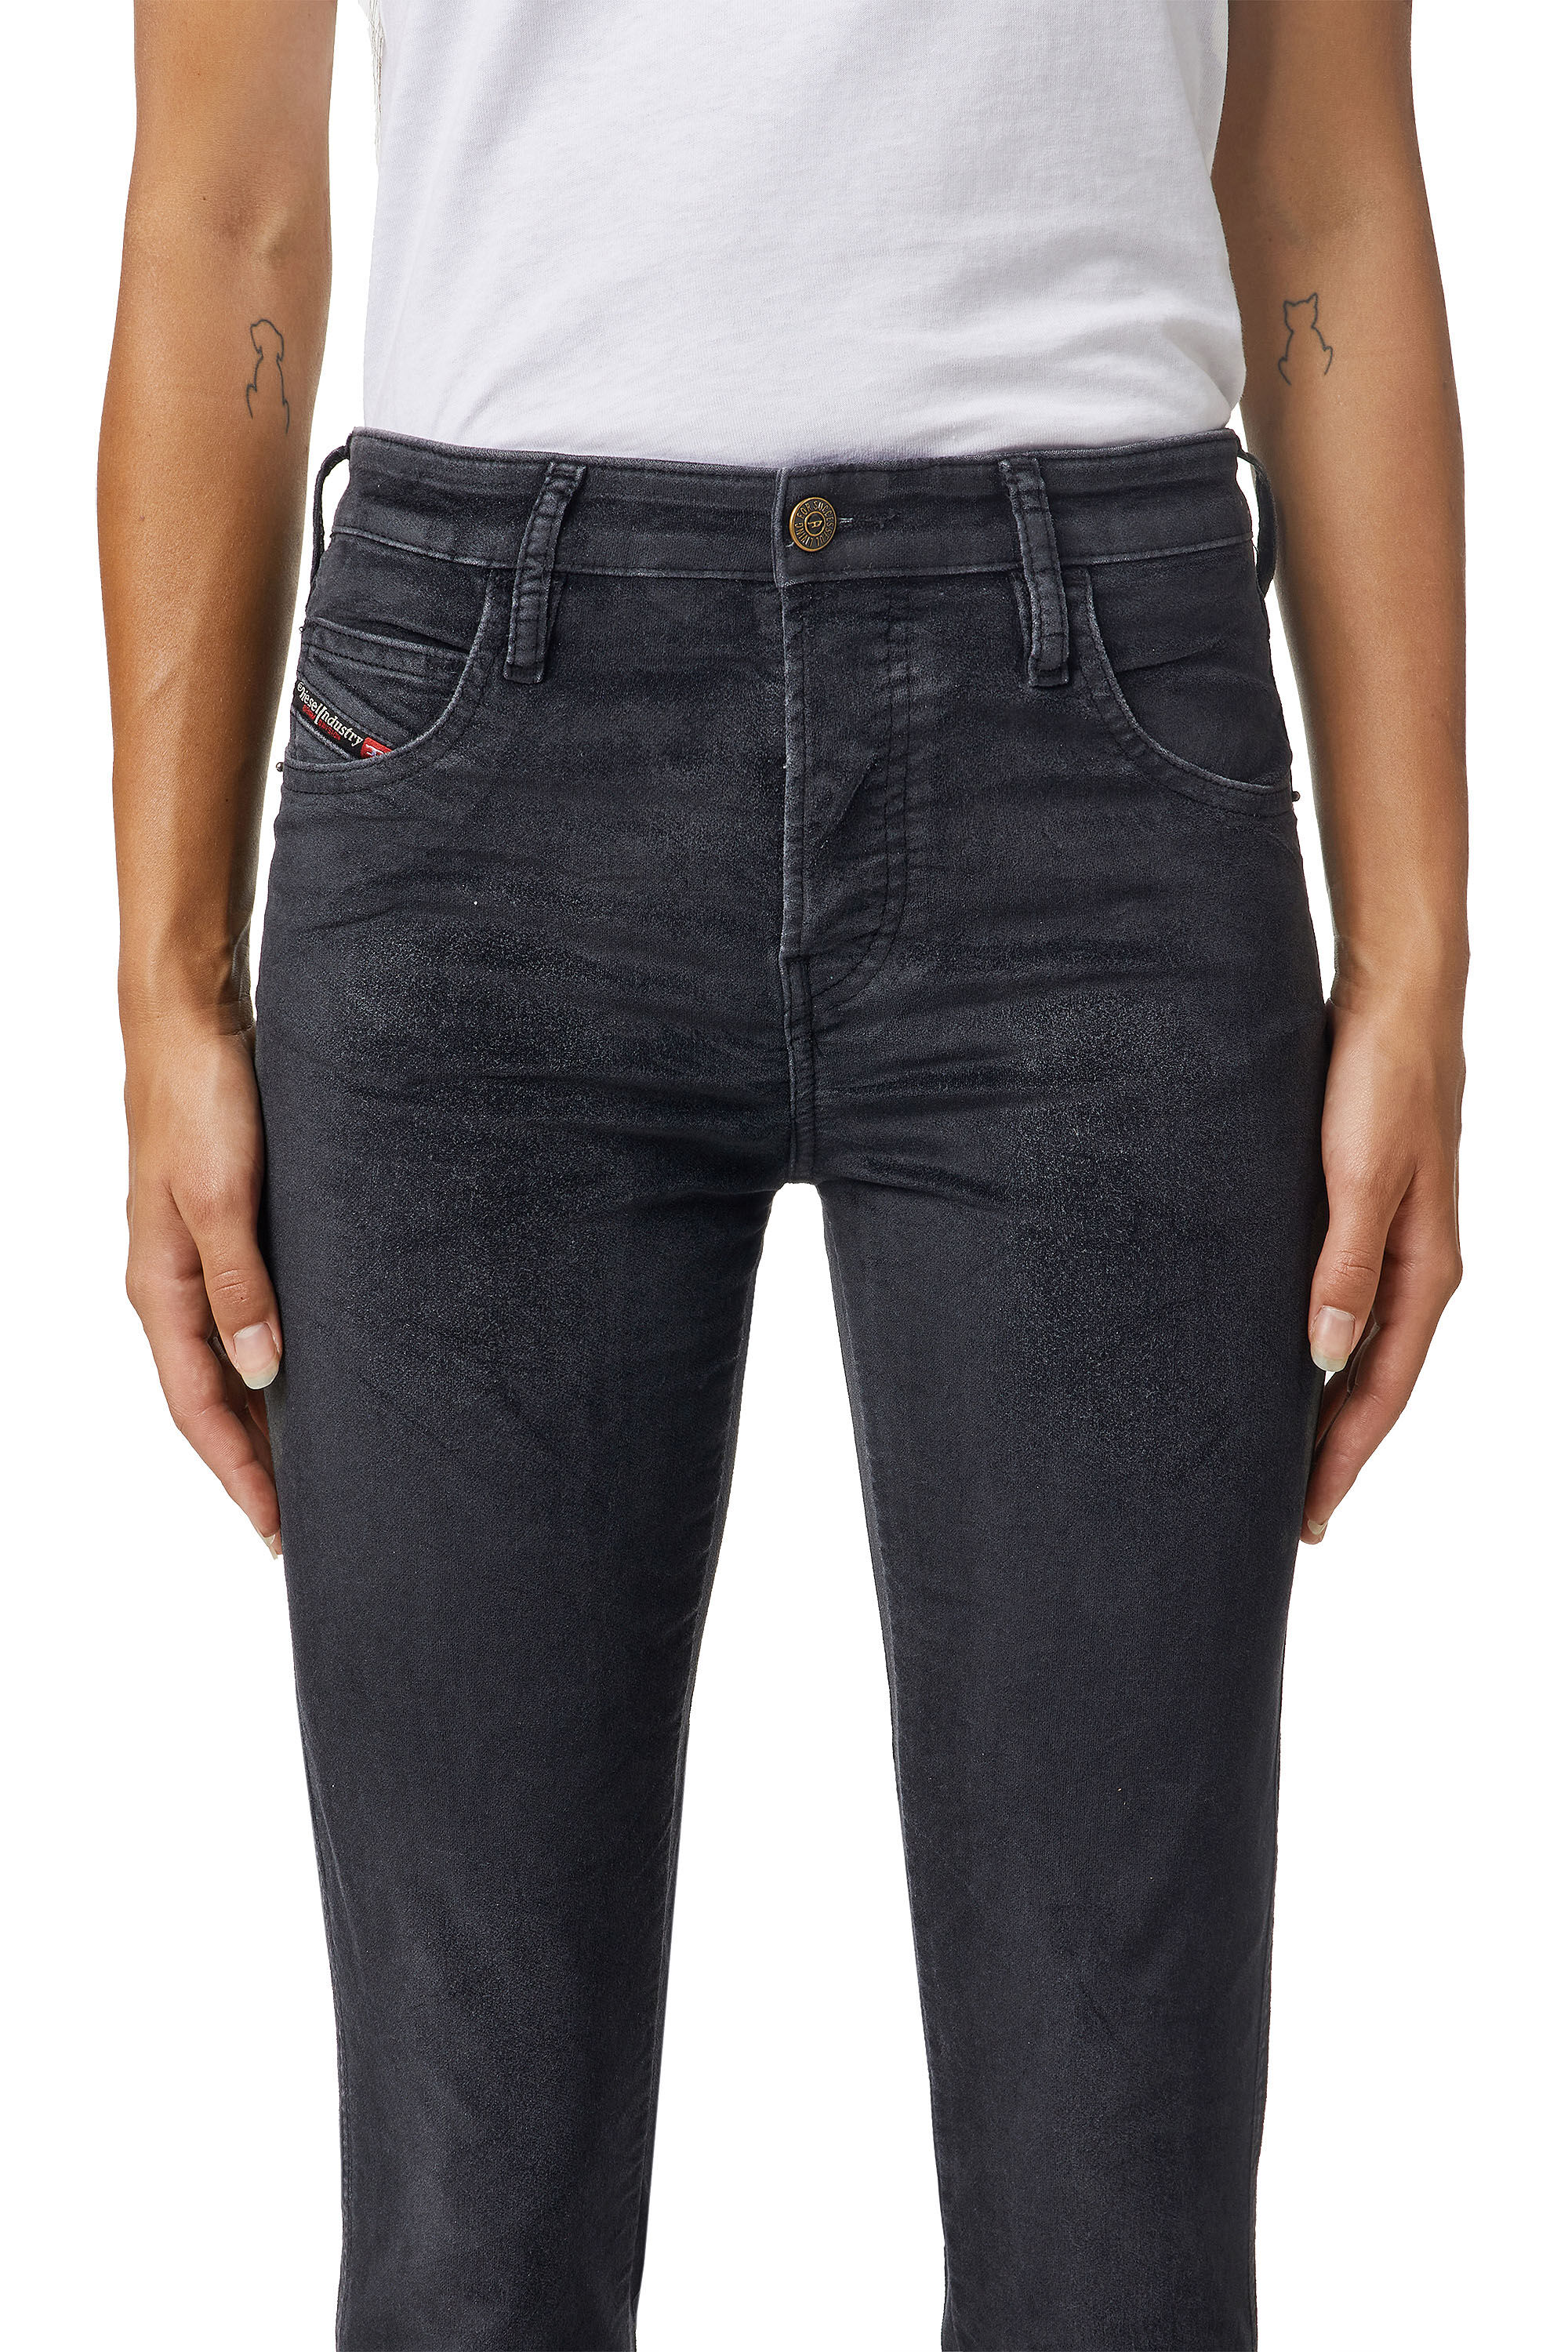 Diesel - Babhila Slim Jeans 069XI, Black/Dark grey - Image 4